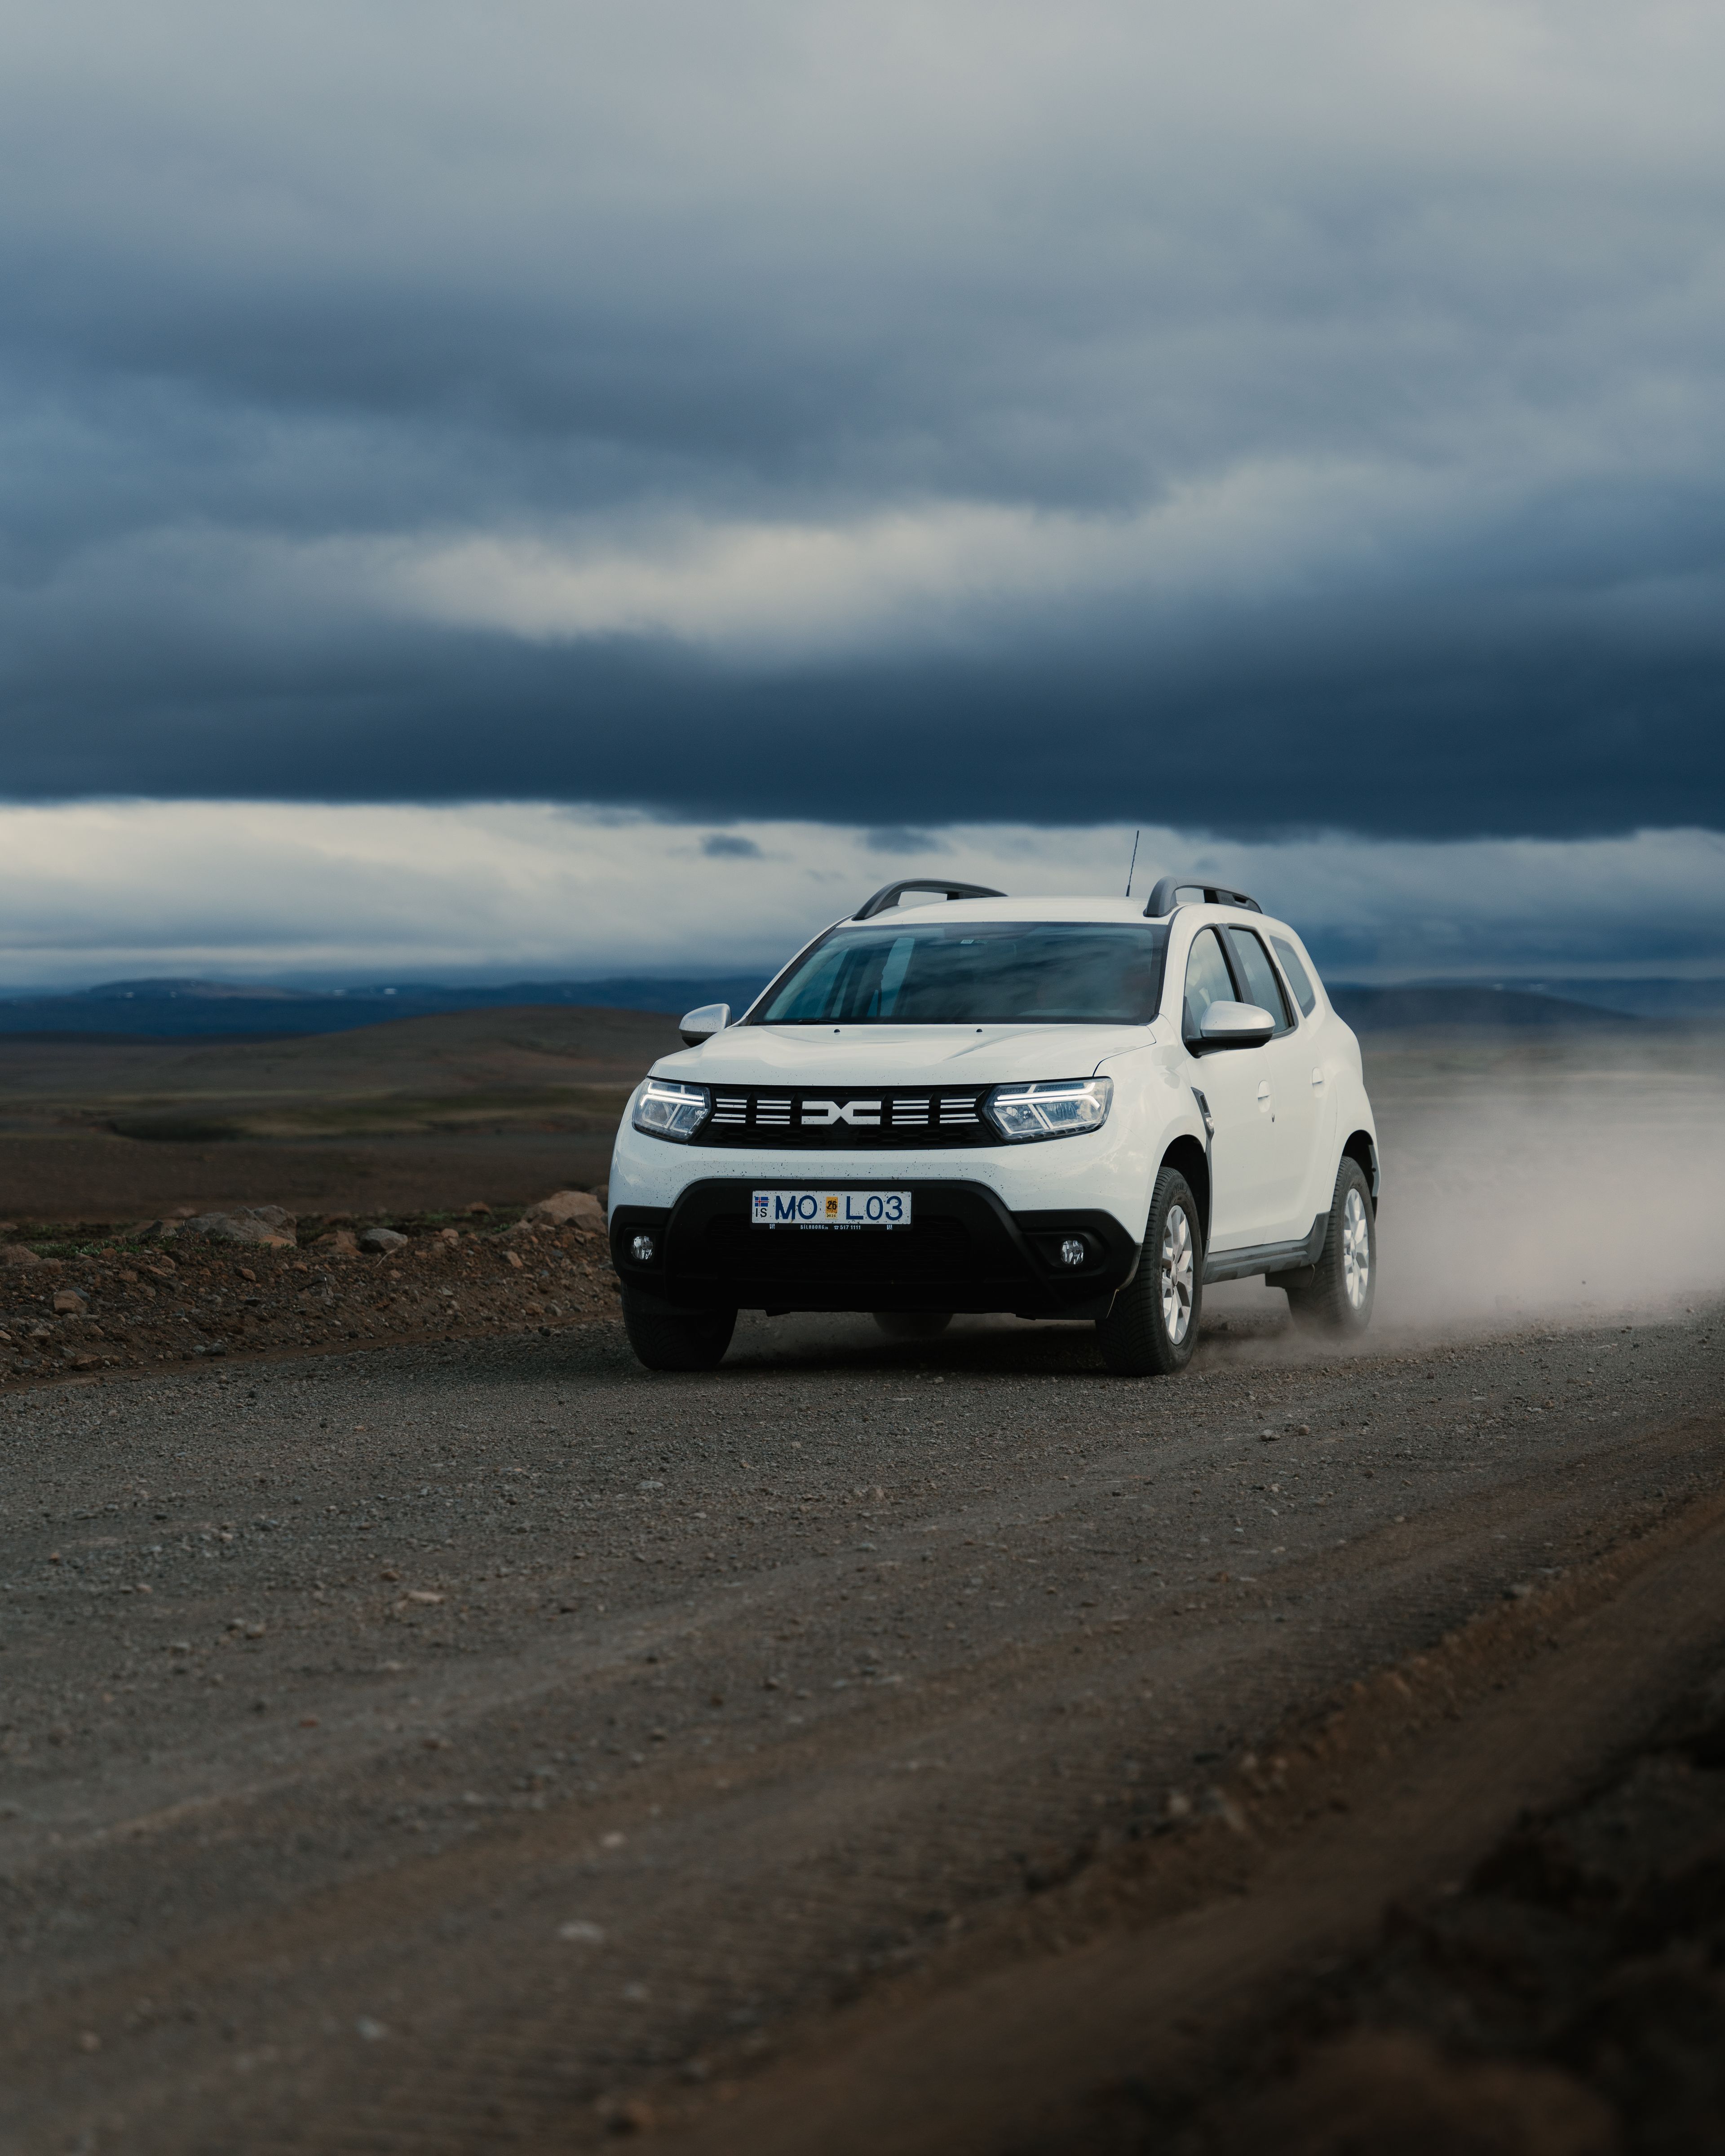 Dacia Duster location conduit sur une route de gravier en Islande